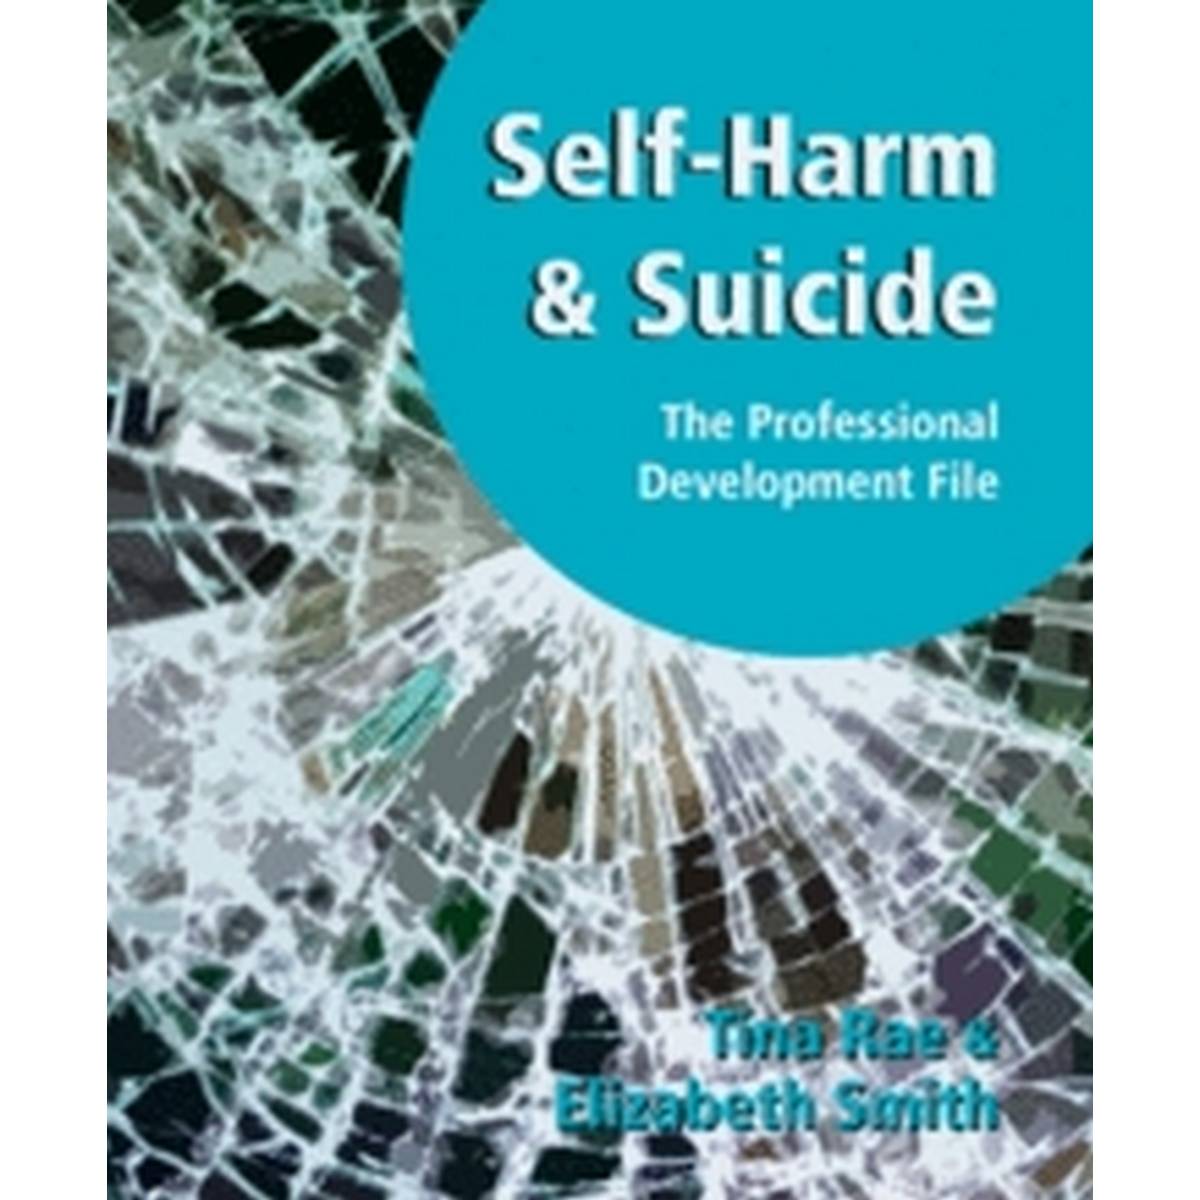 Self-harm & Suicide